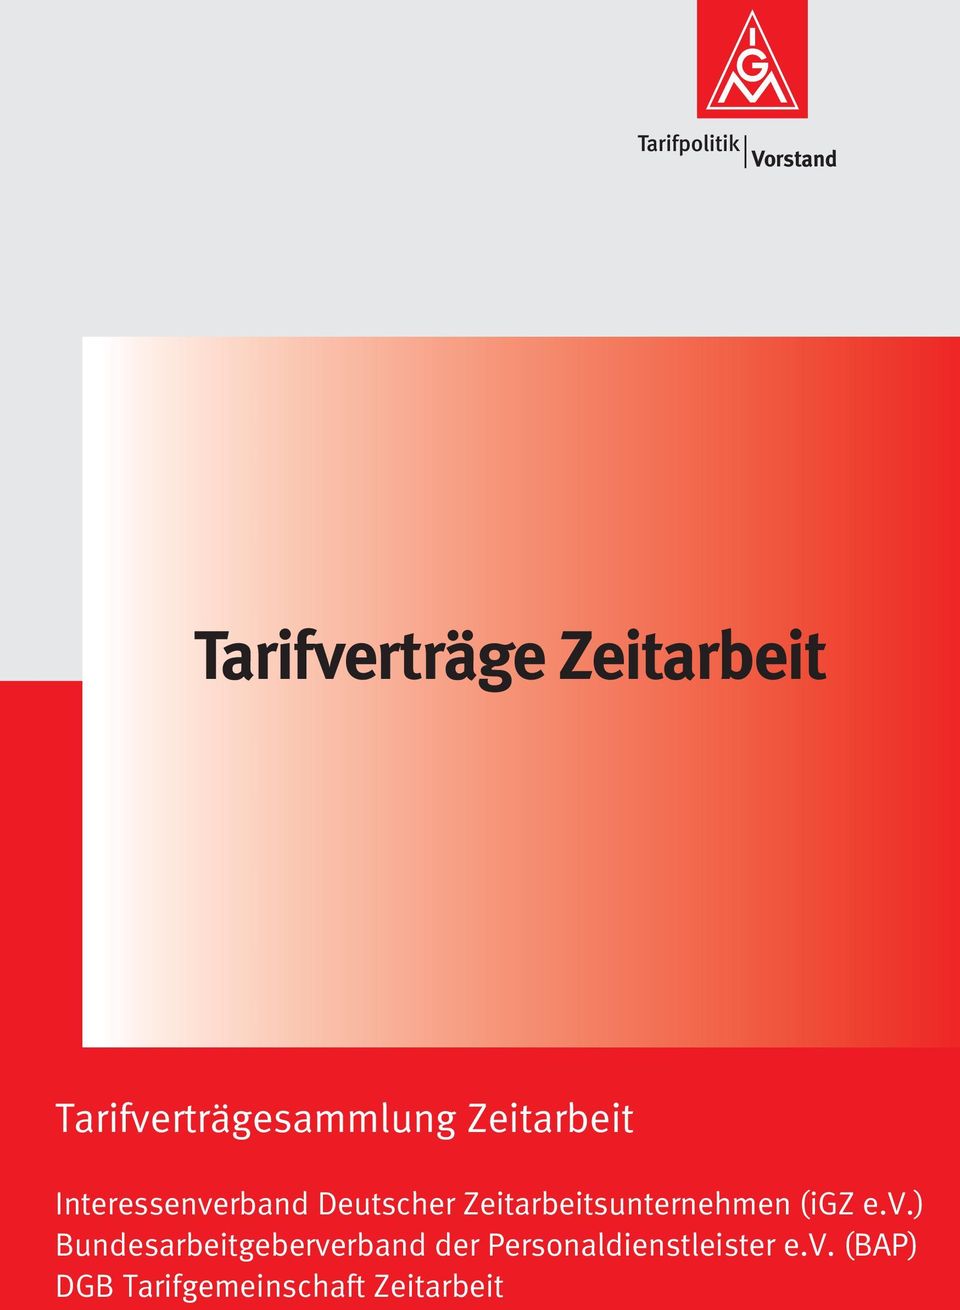 Deutscher Zeitarbeitsunternehmen (igz e.v.